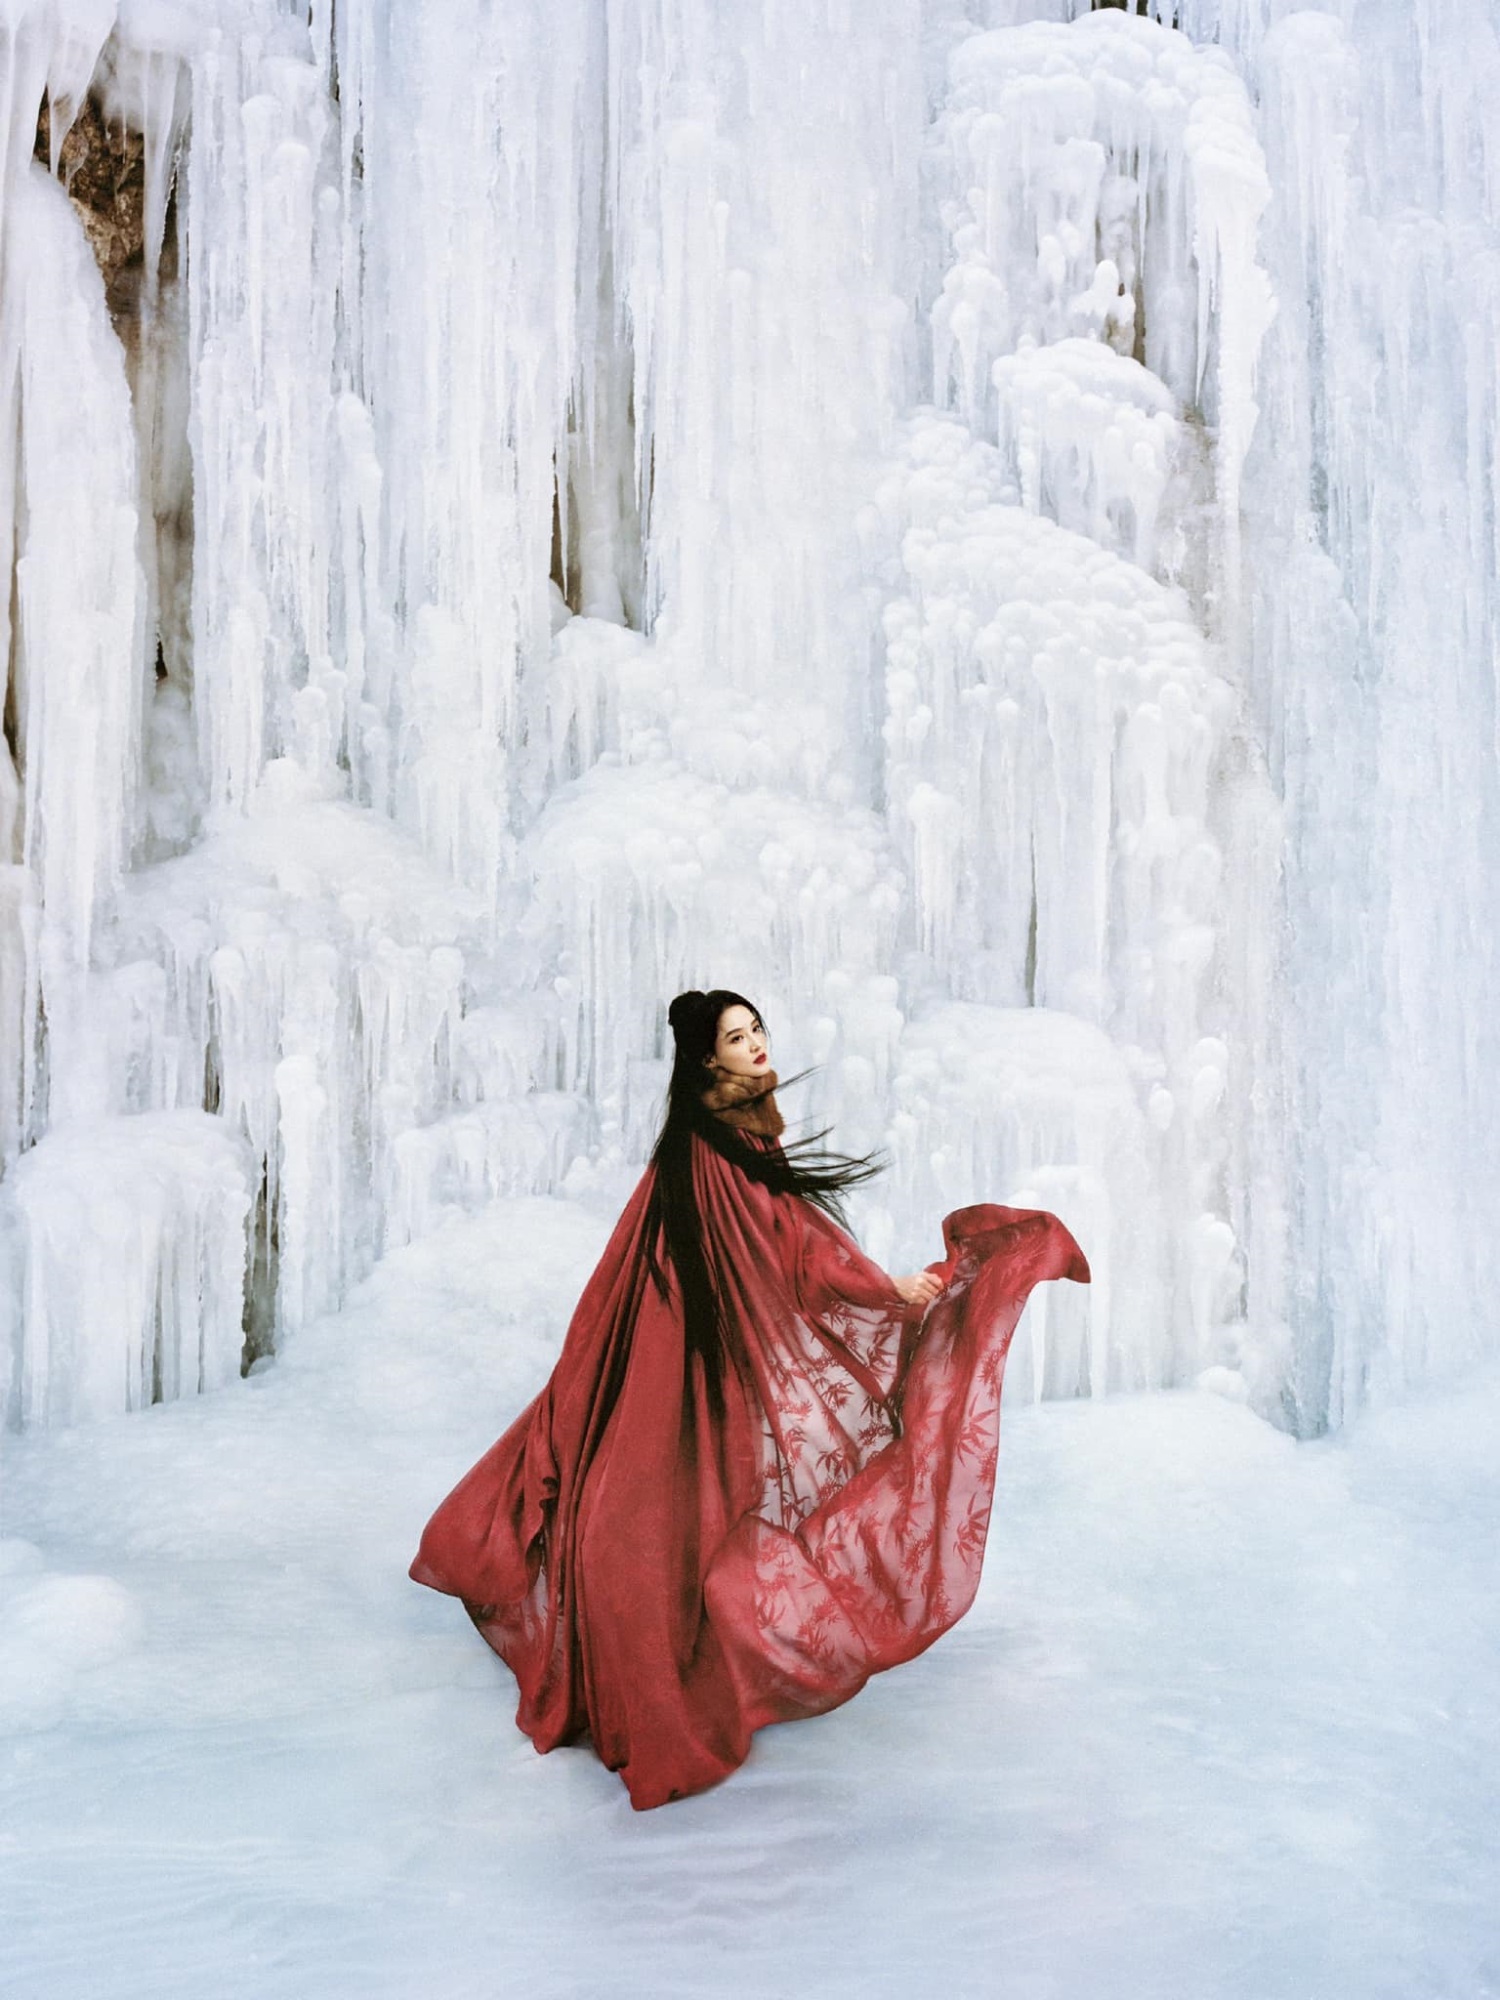 Loạt ảnh mừng năm mới của Lý Thấm 'đẹp hút hồn' giữa trời tuyết trắng  - Ảnh 4